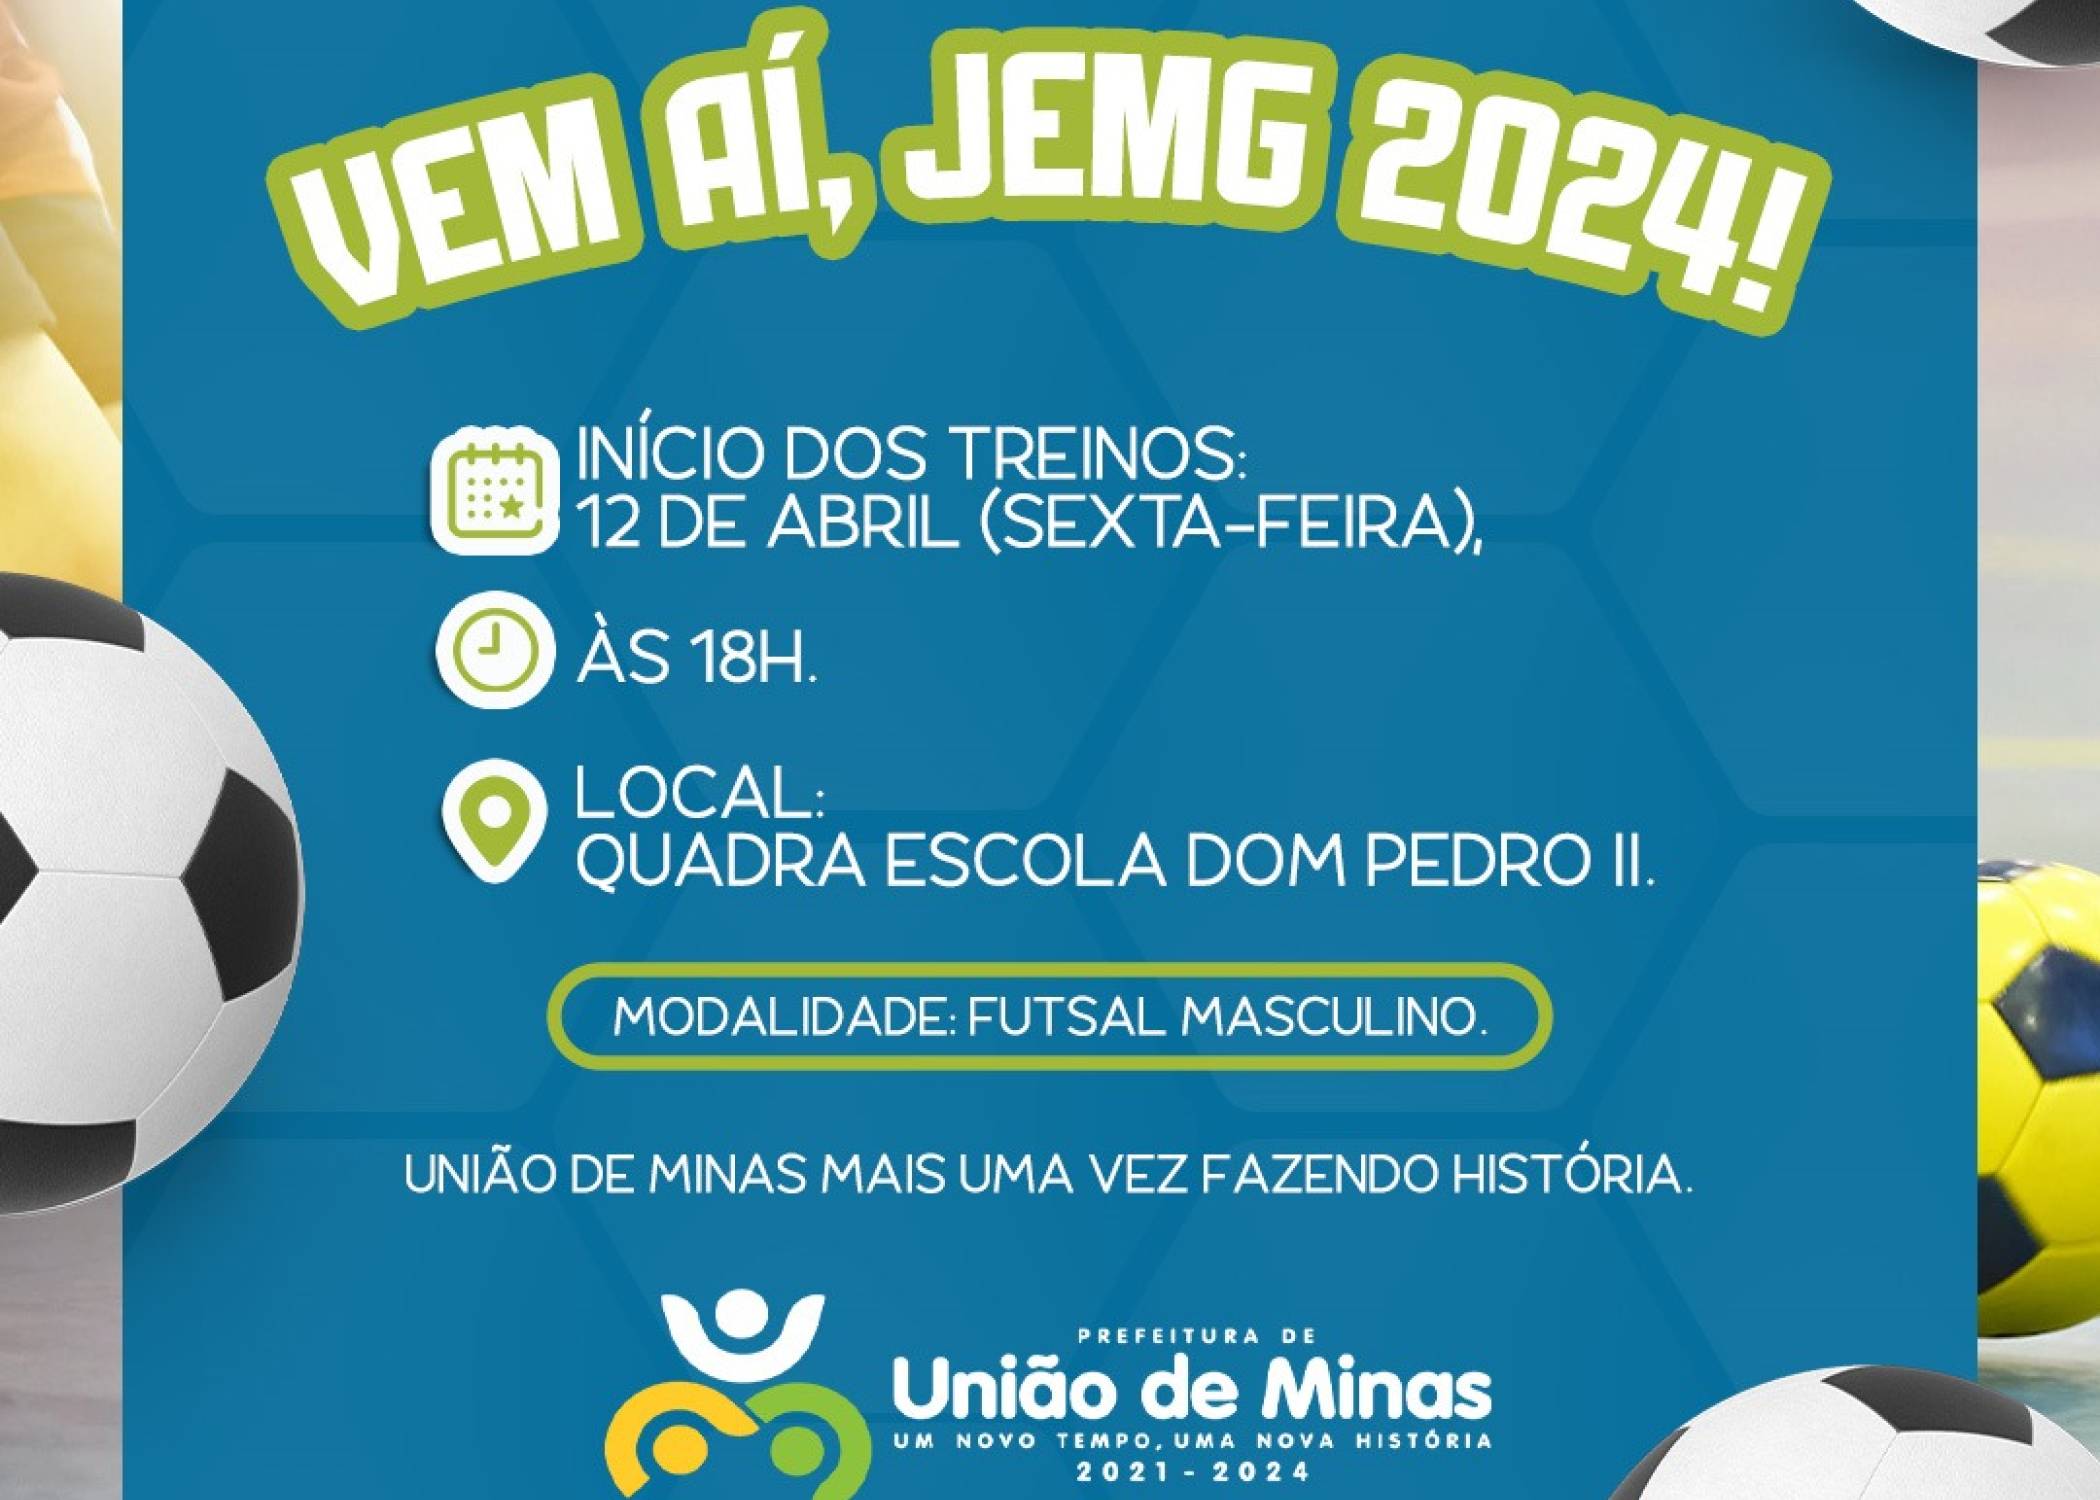 União de Minas vai participar do JEMG pelo 6º ano consecutivo!